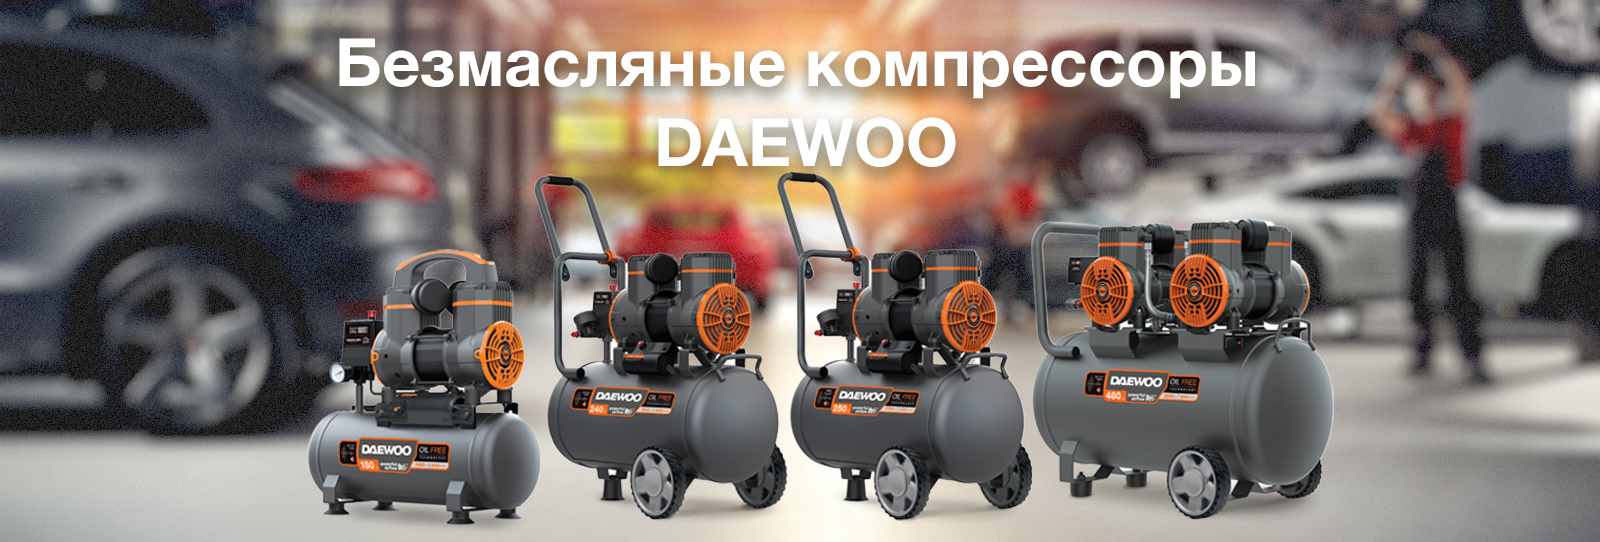 Обновление моторов на бензиновых газонокосилках DAEWOO